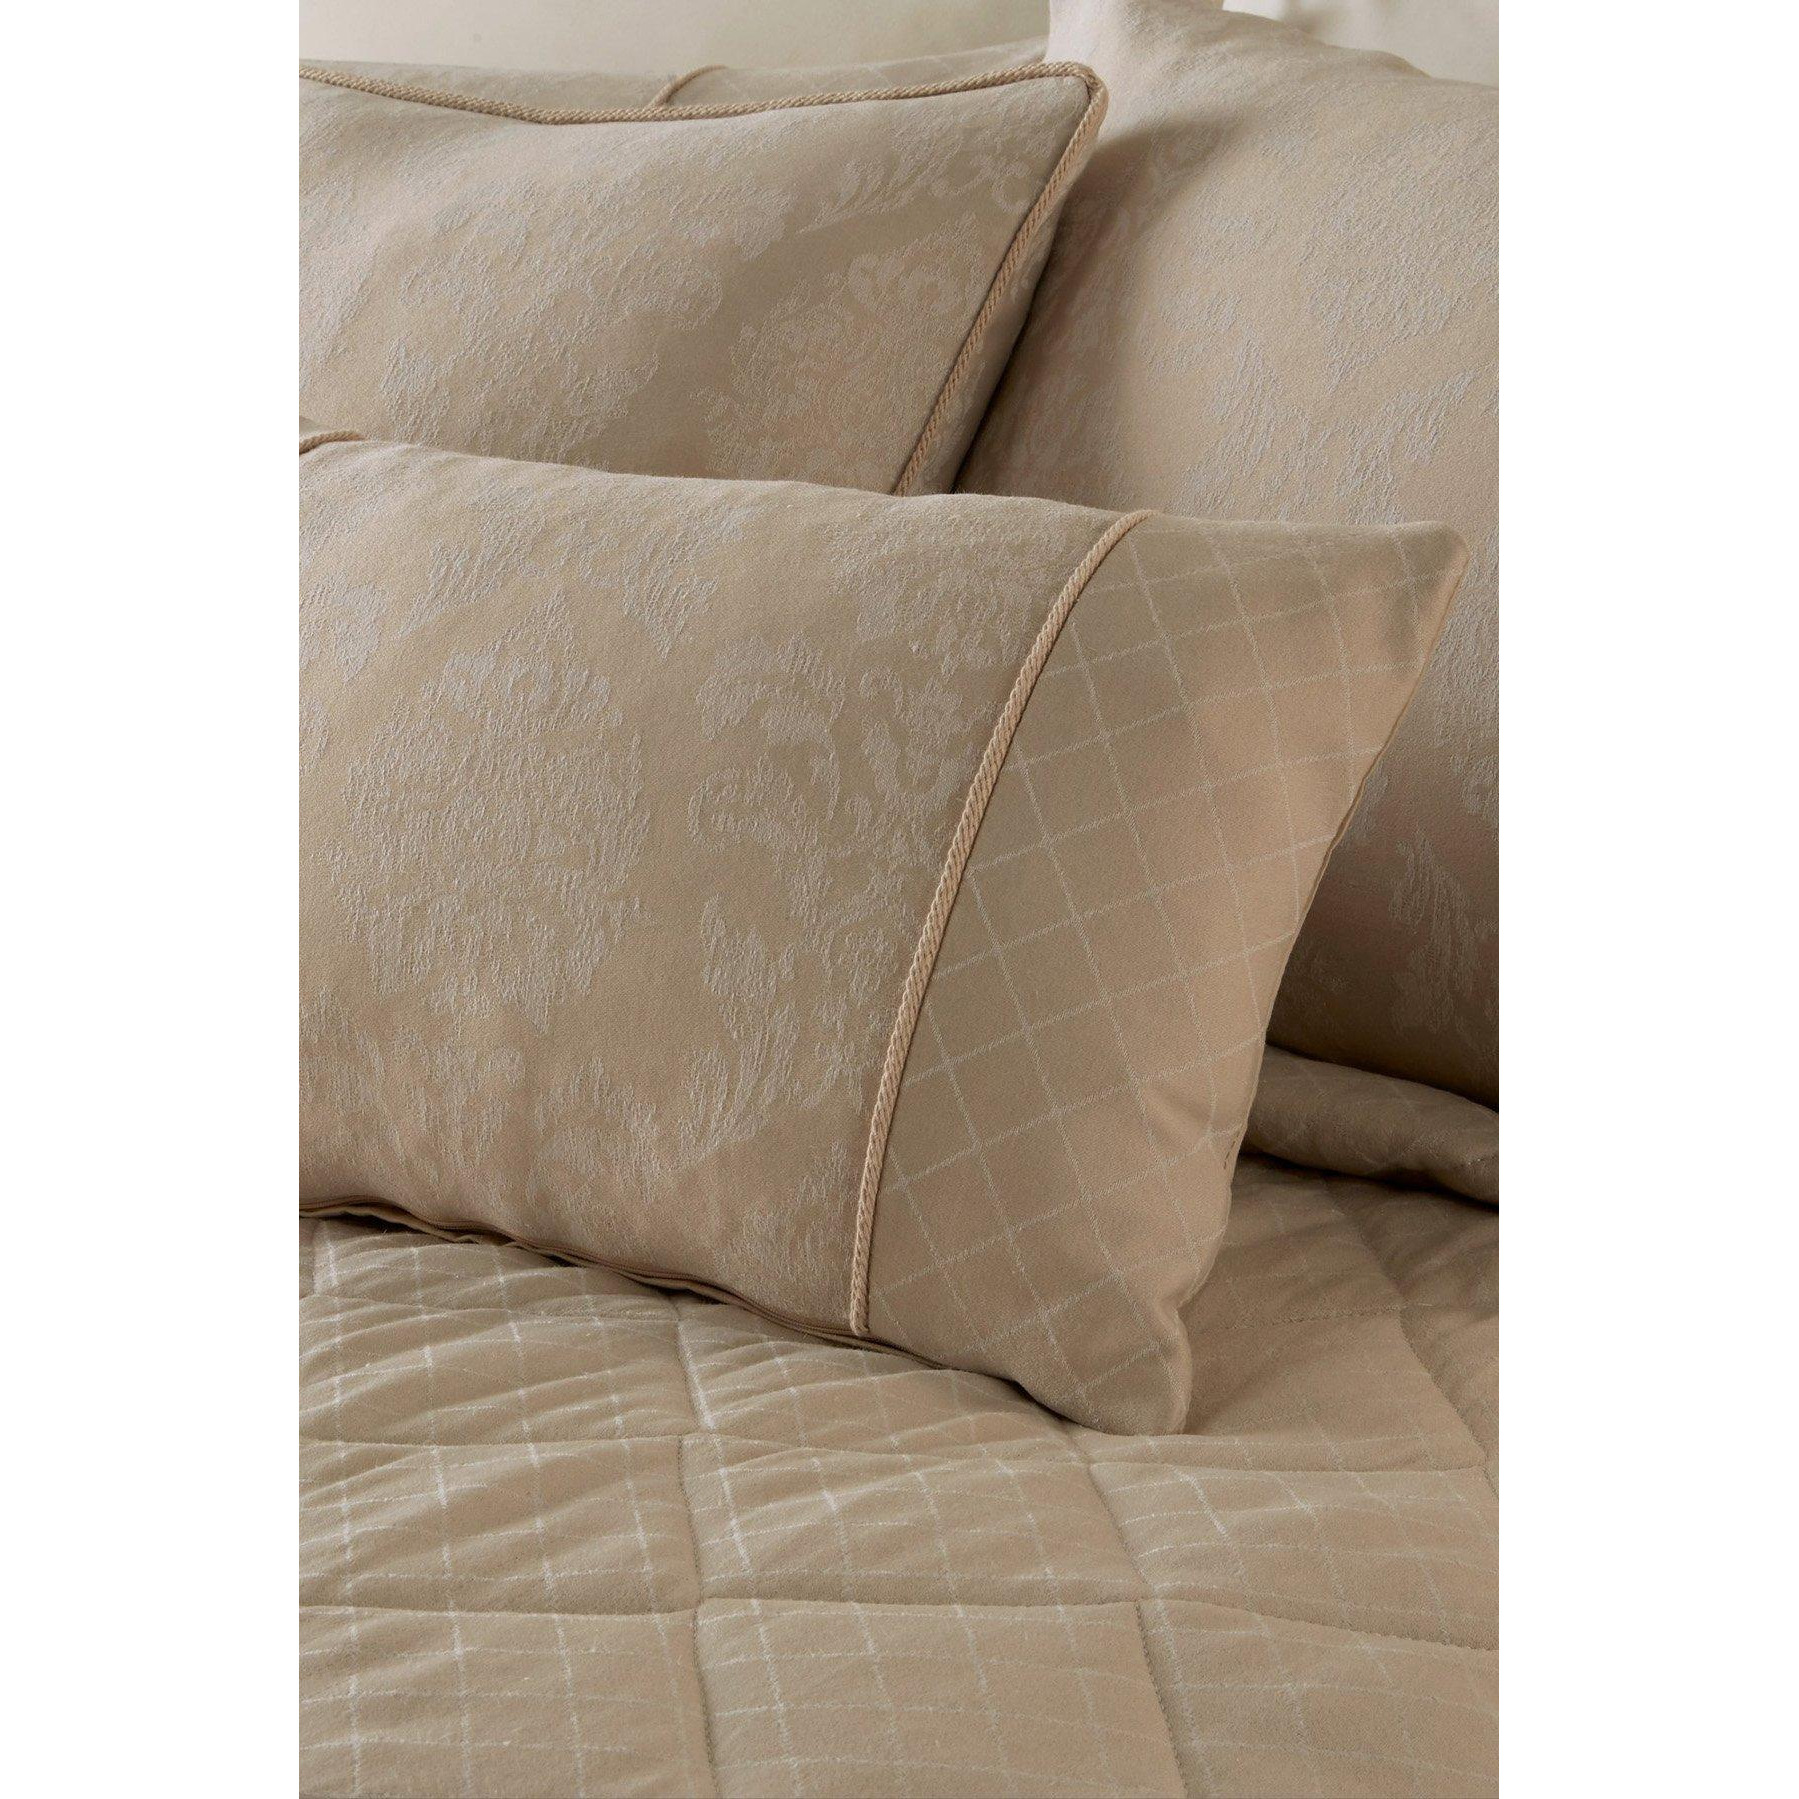 'Rosana' Luxury Damask Filled Bedroom Cushion - image 1